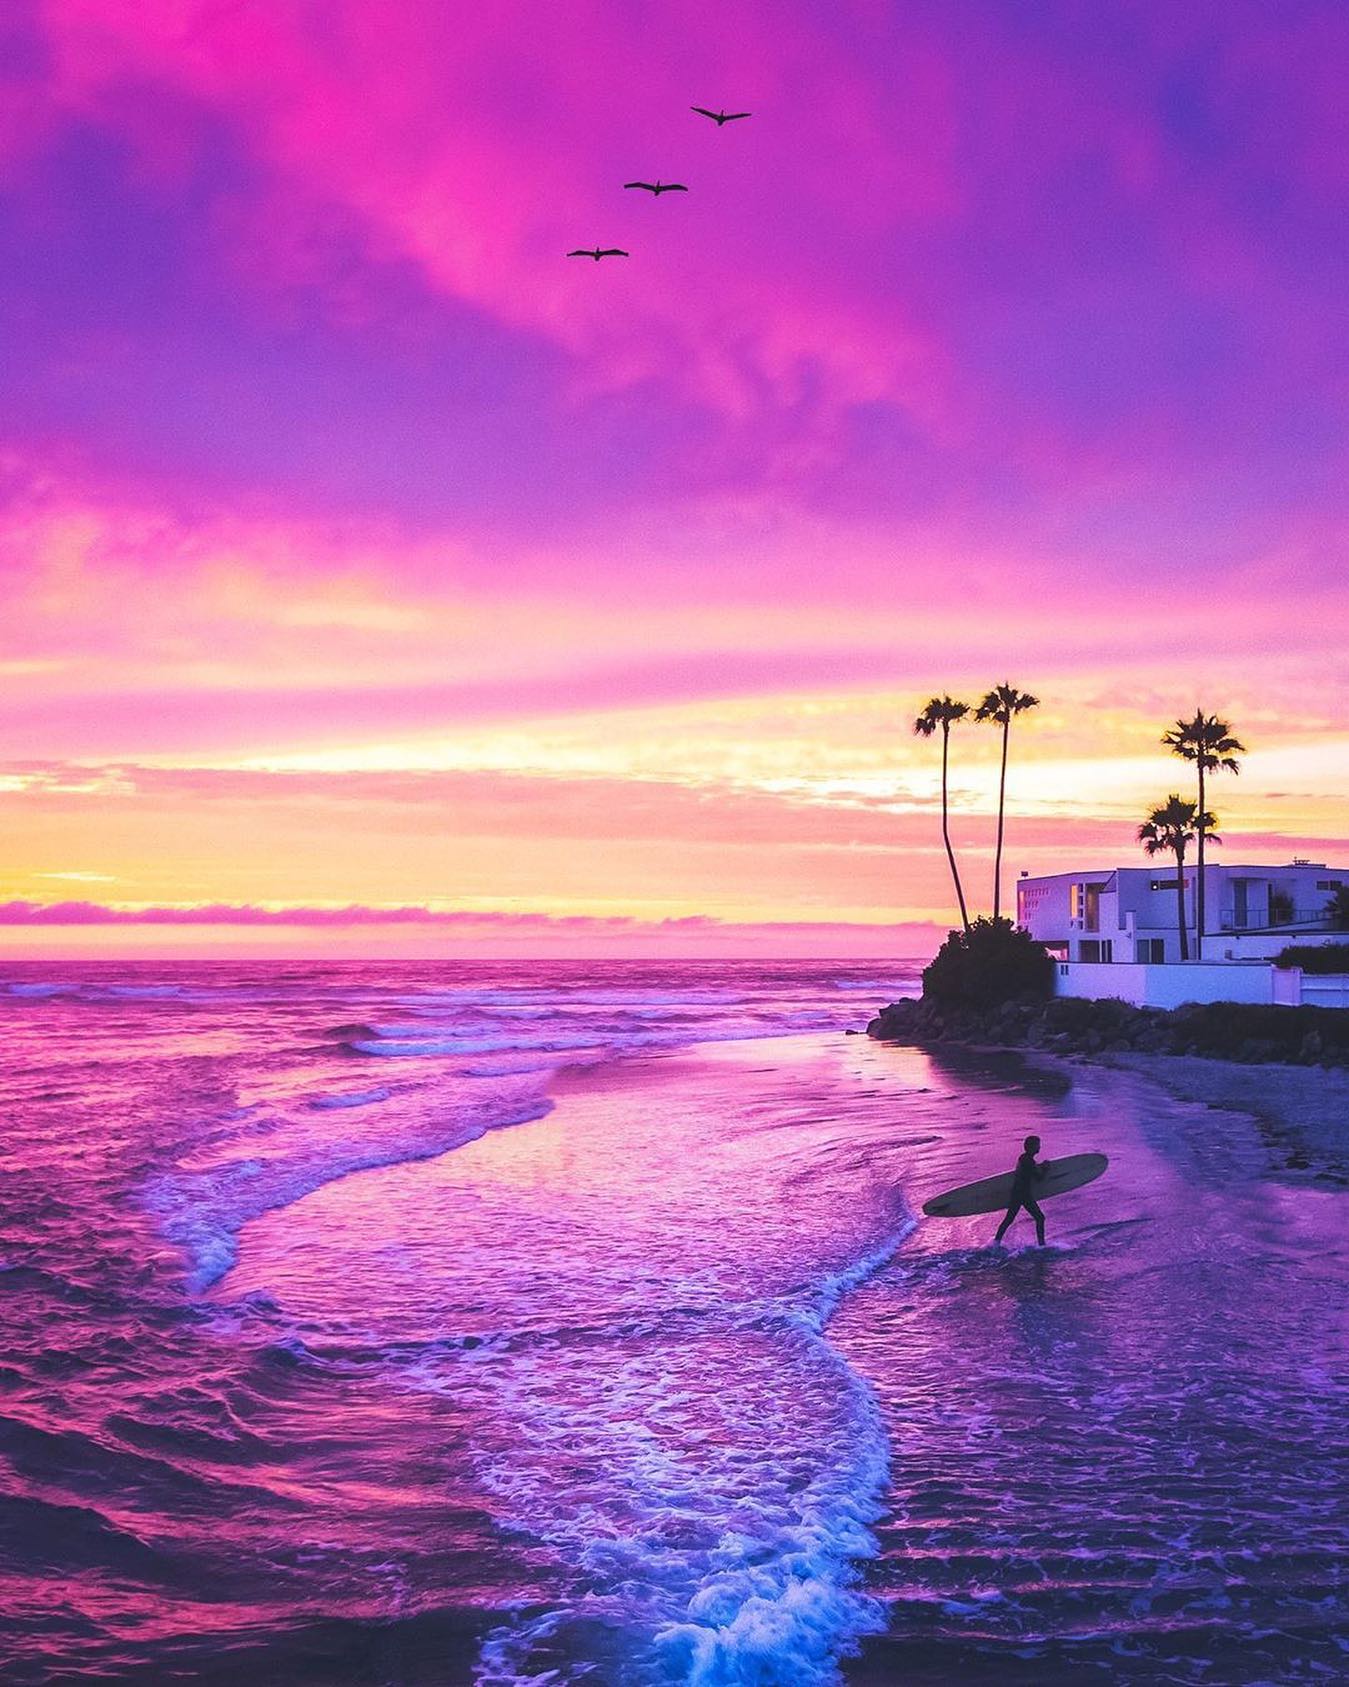 Pink & Purple Sky in San Diego, CA